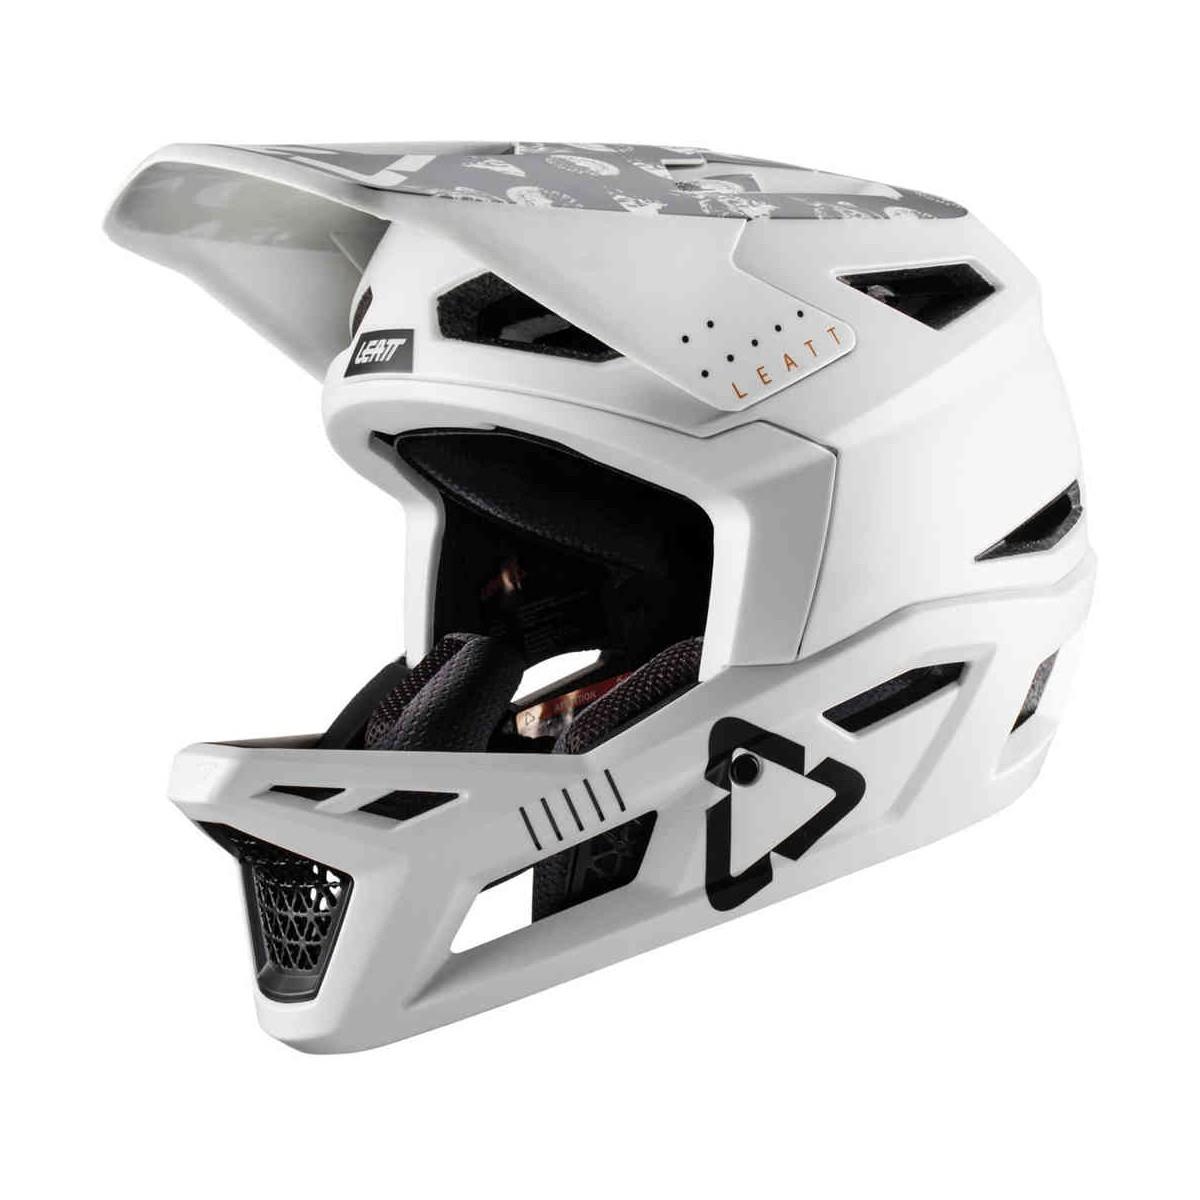 Gravity 4.0 Full Face MTB Helmet White Size L (59-60cm)